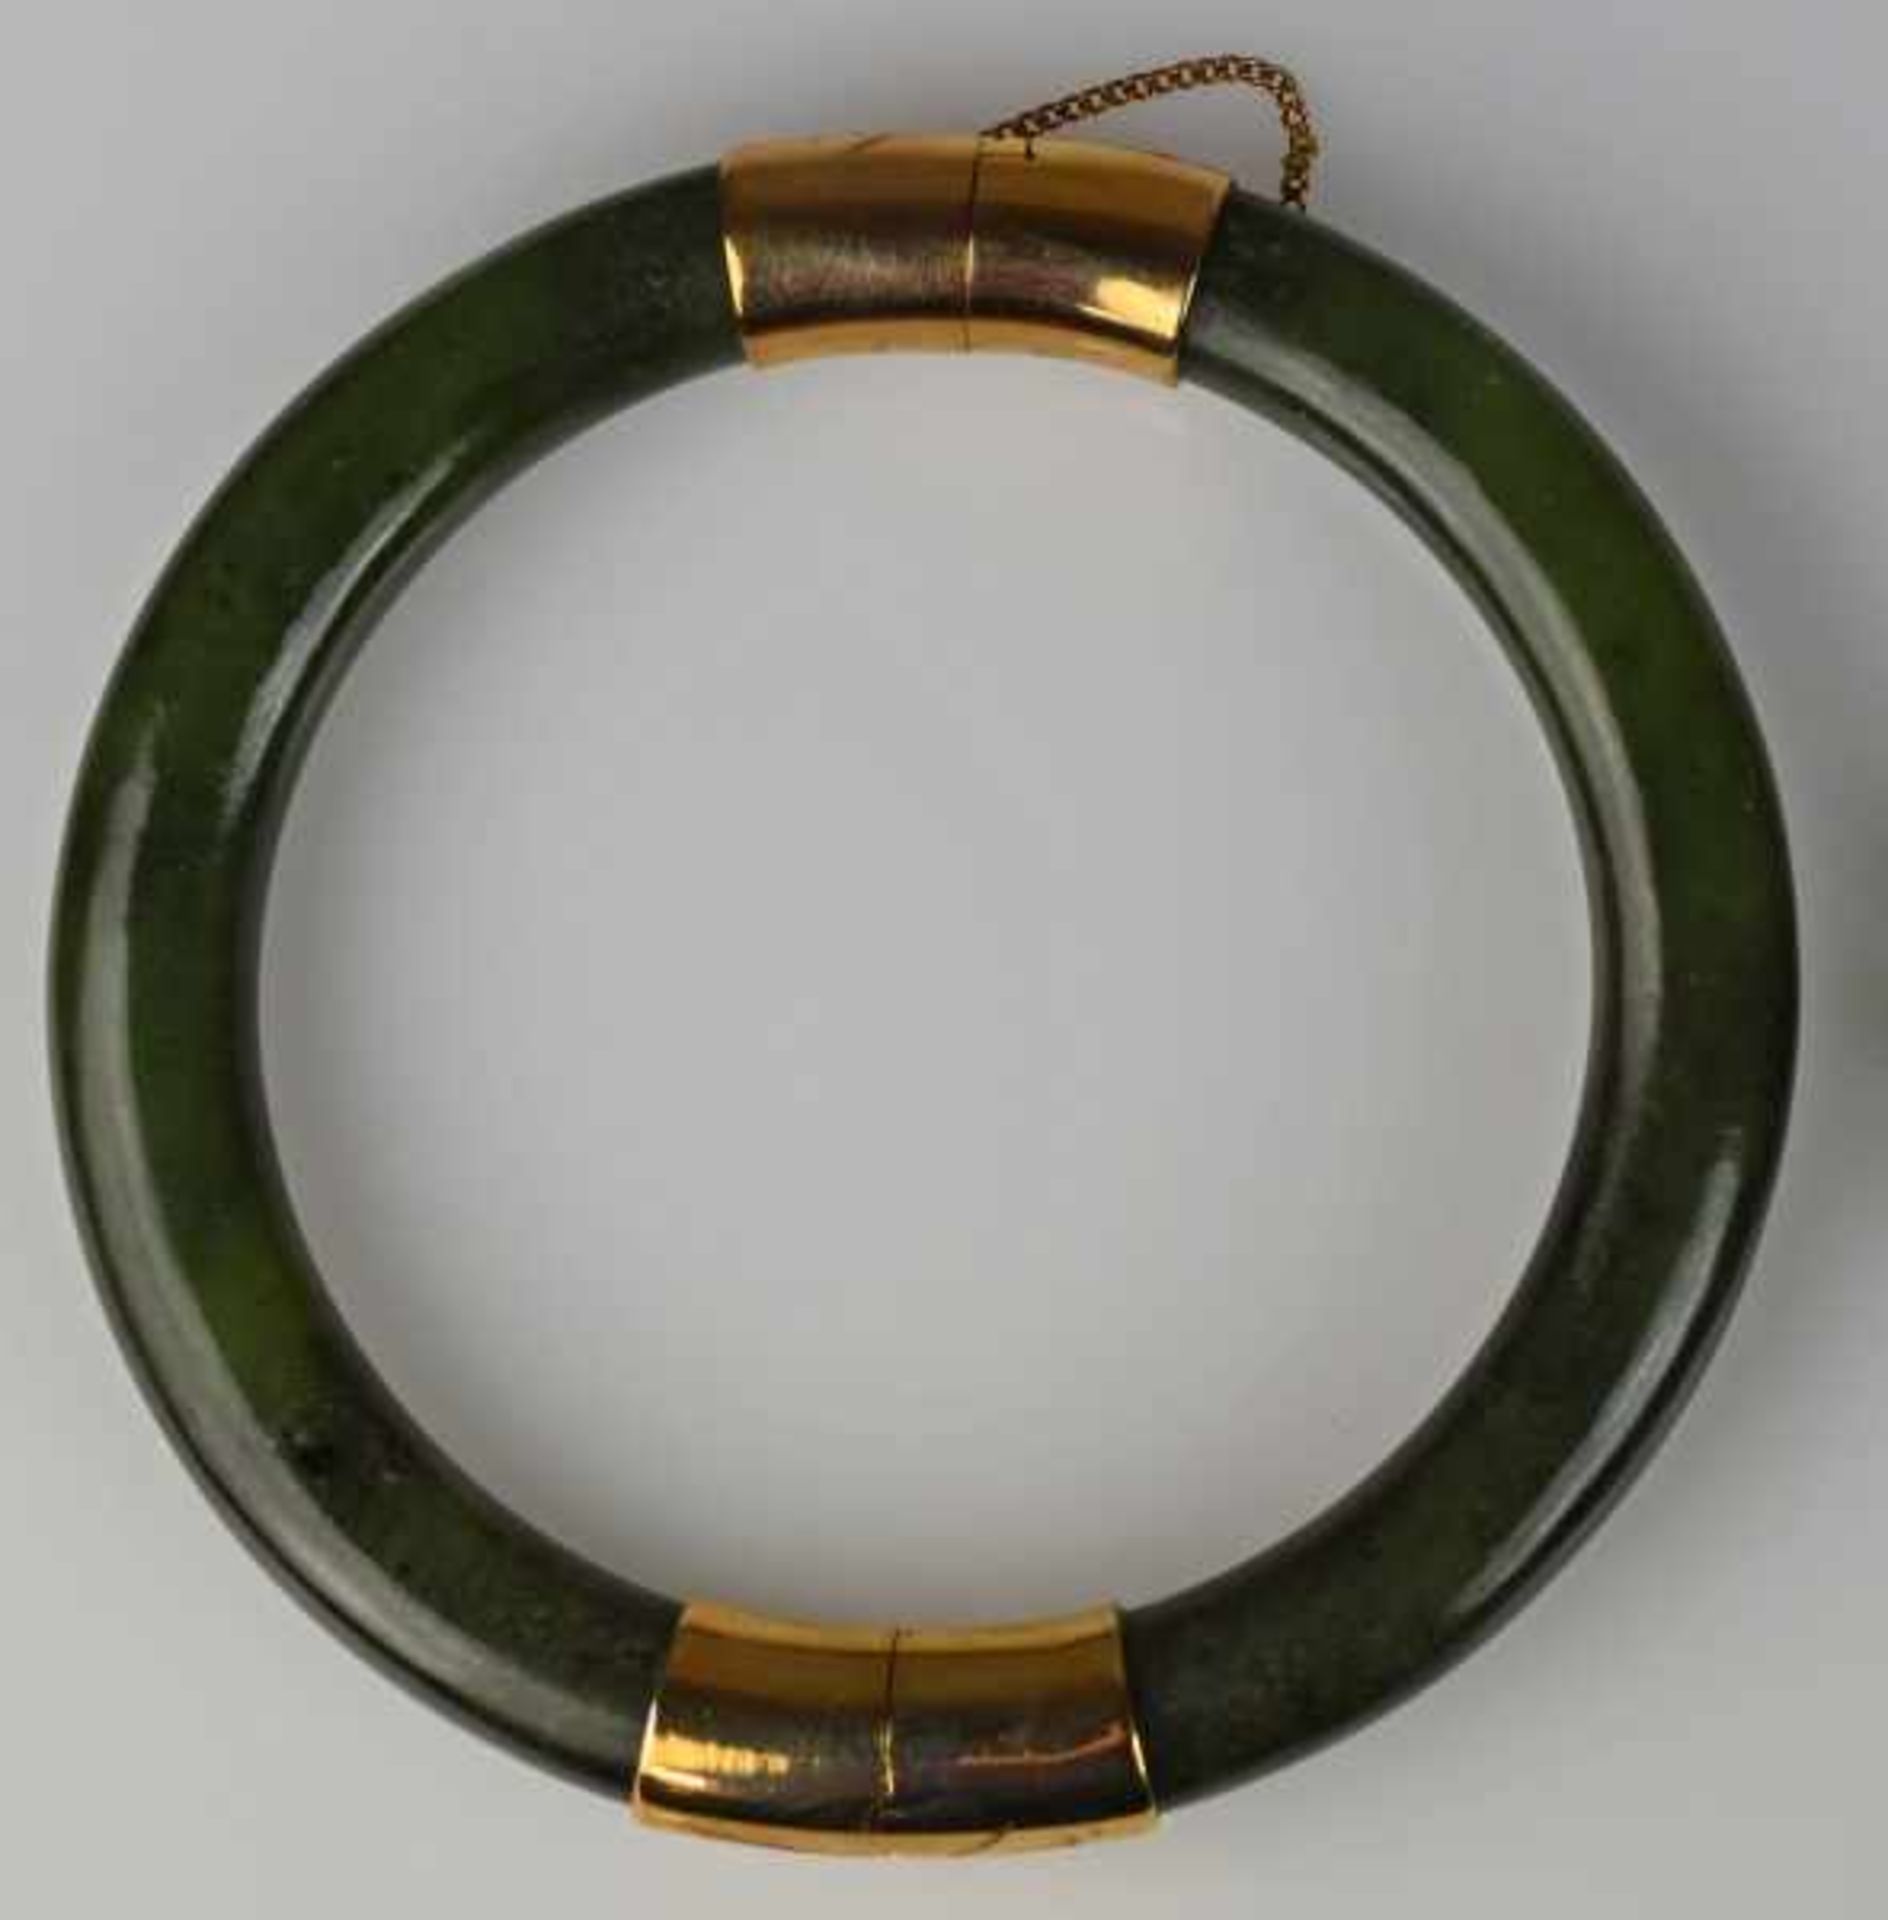 ARMREIF Reif aus zwei Jadebögen mit Goldmontur, Steckschluss mit Sicherheitskette, vergoldet, - Bild 2 aus 2